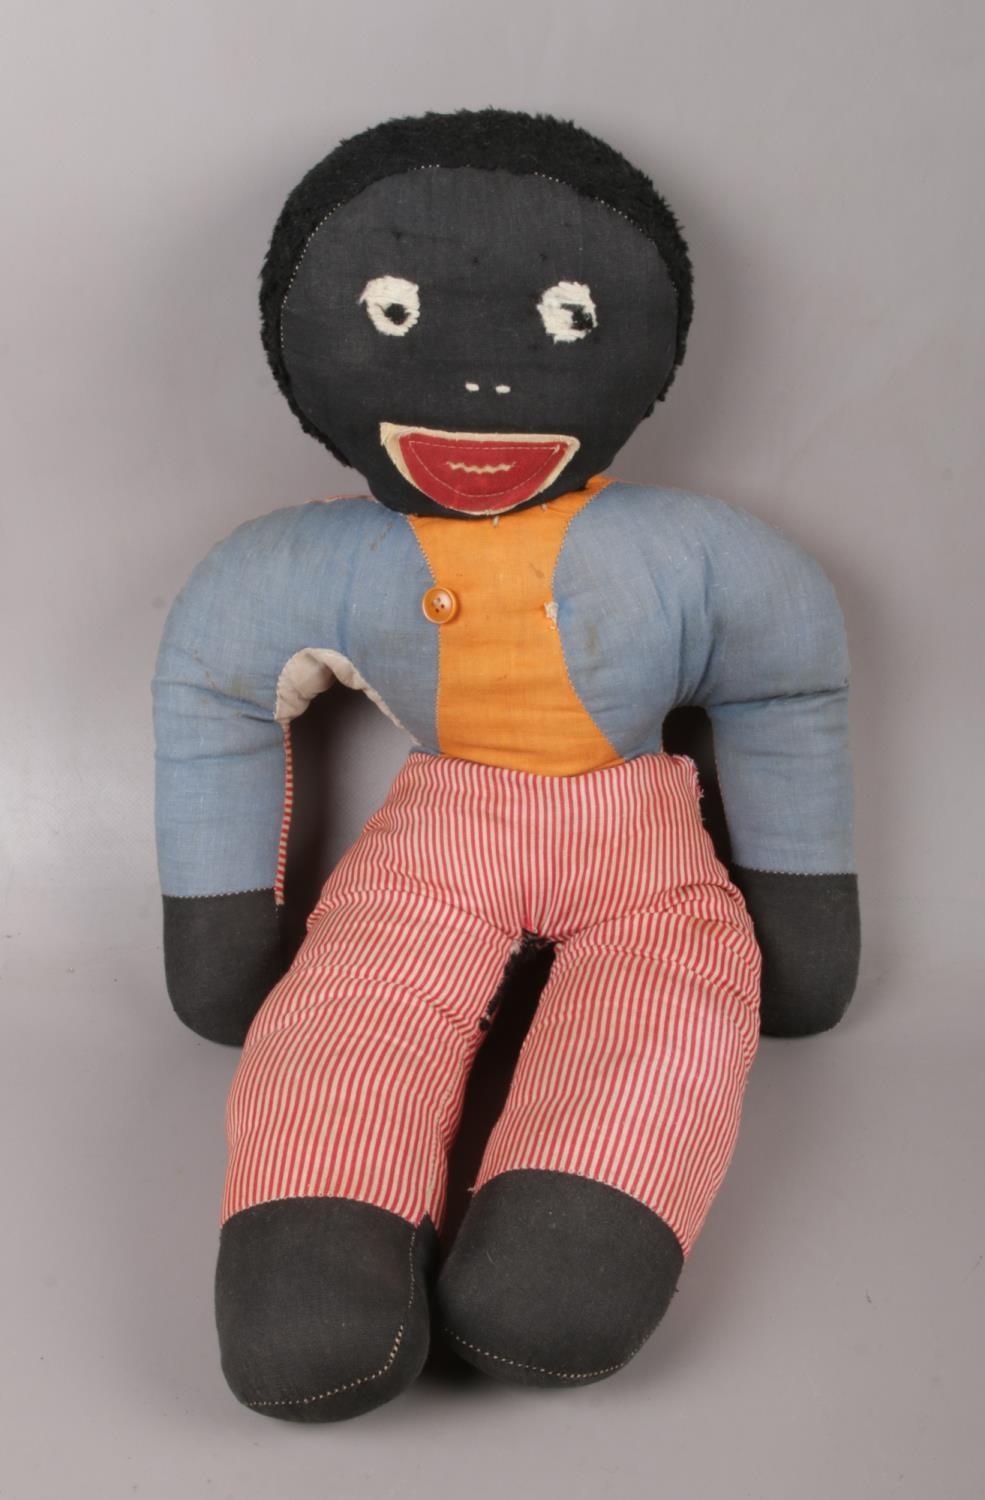 A vintage stuffed soft toy, possibly by Joy Toys.